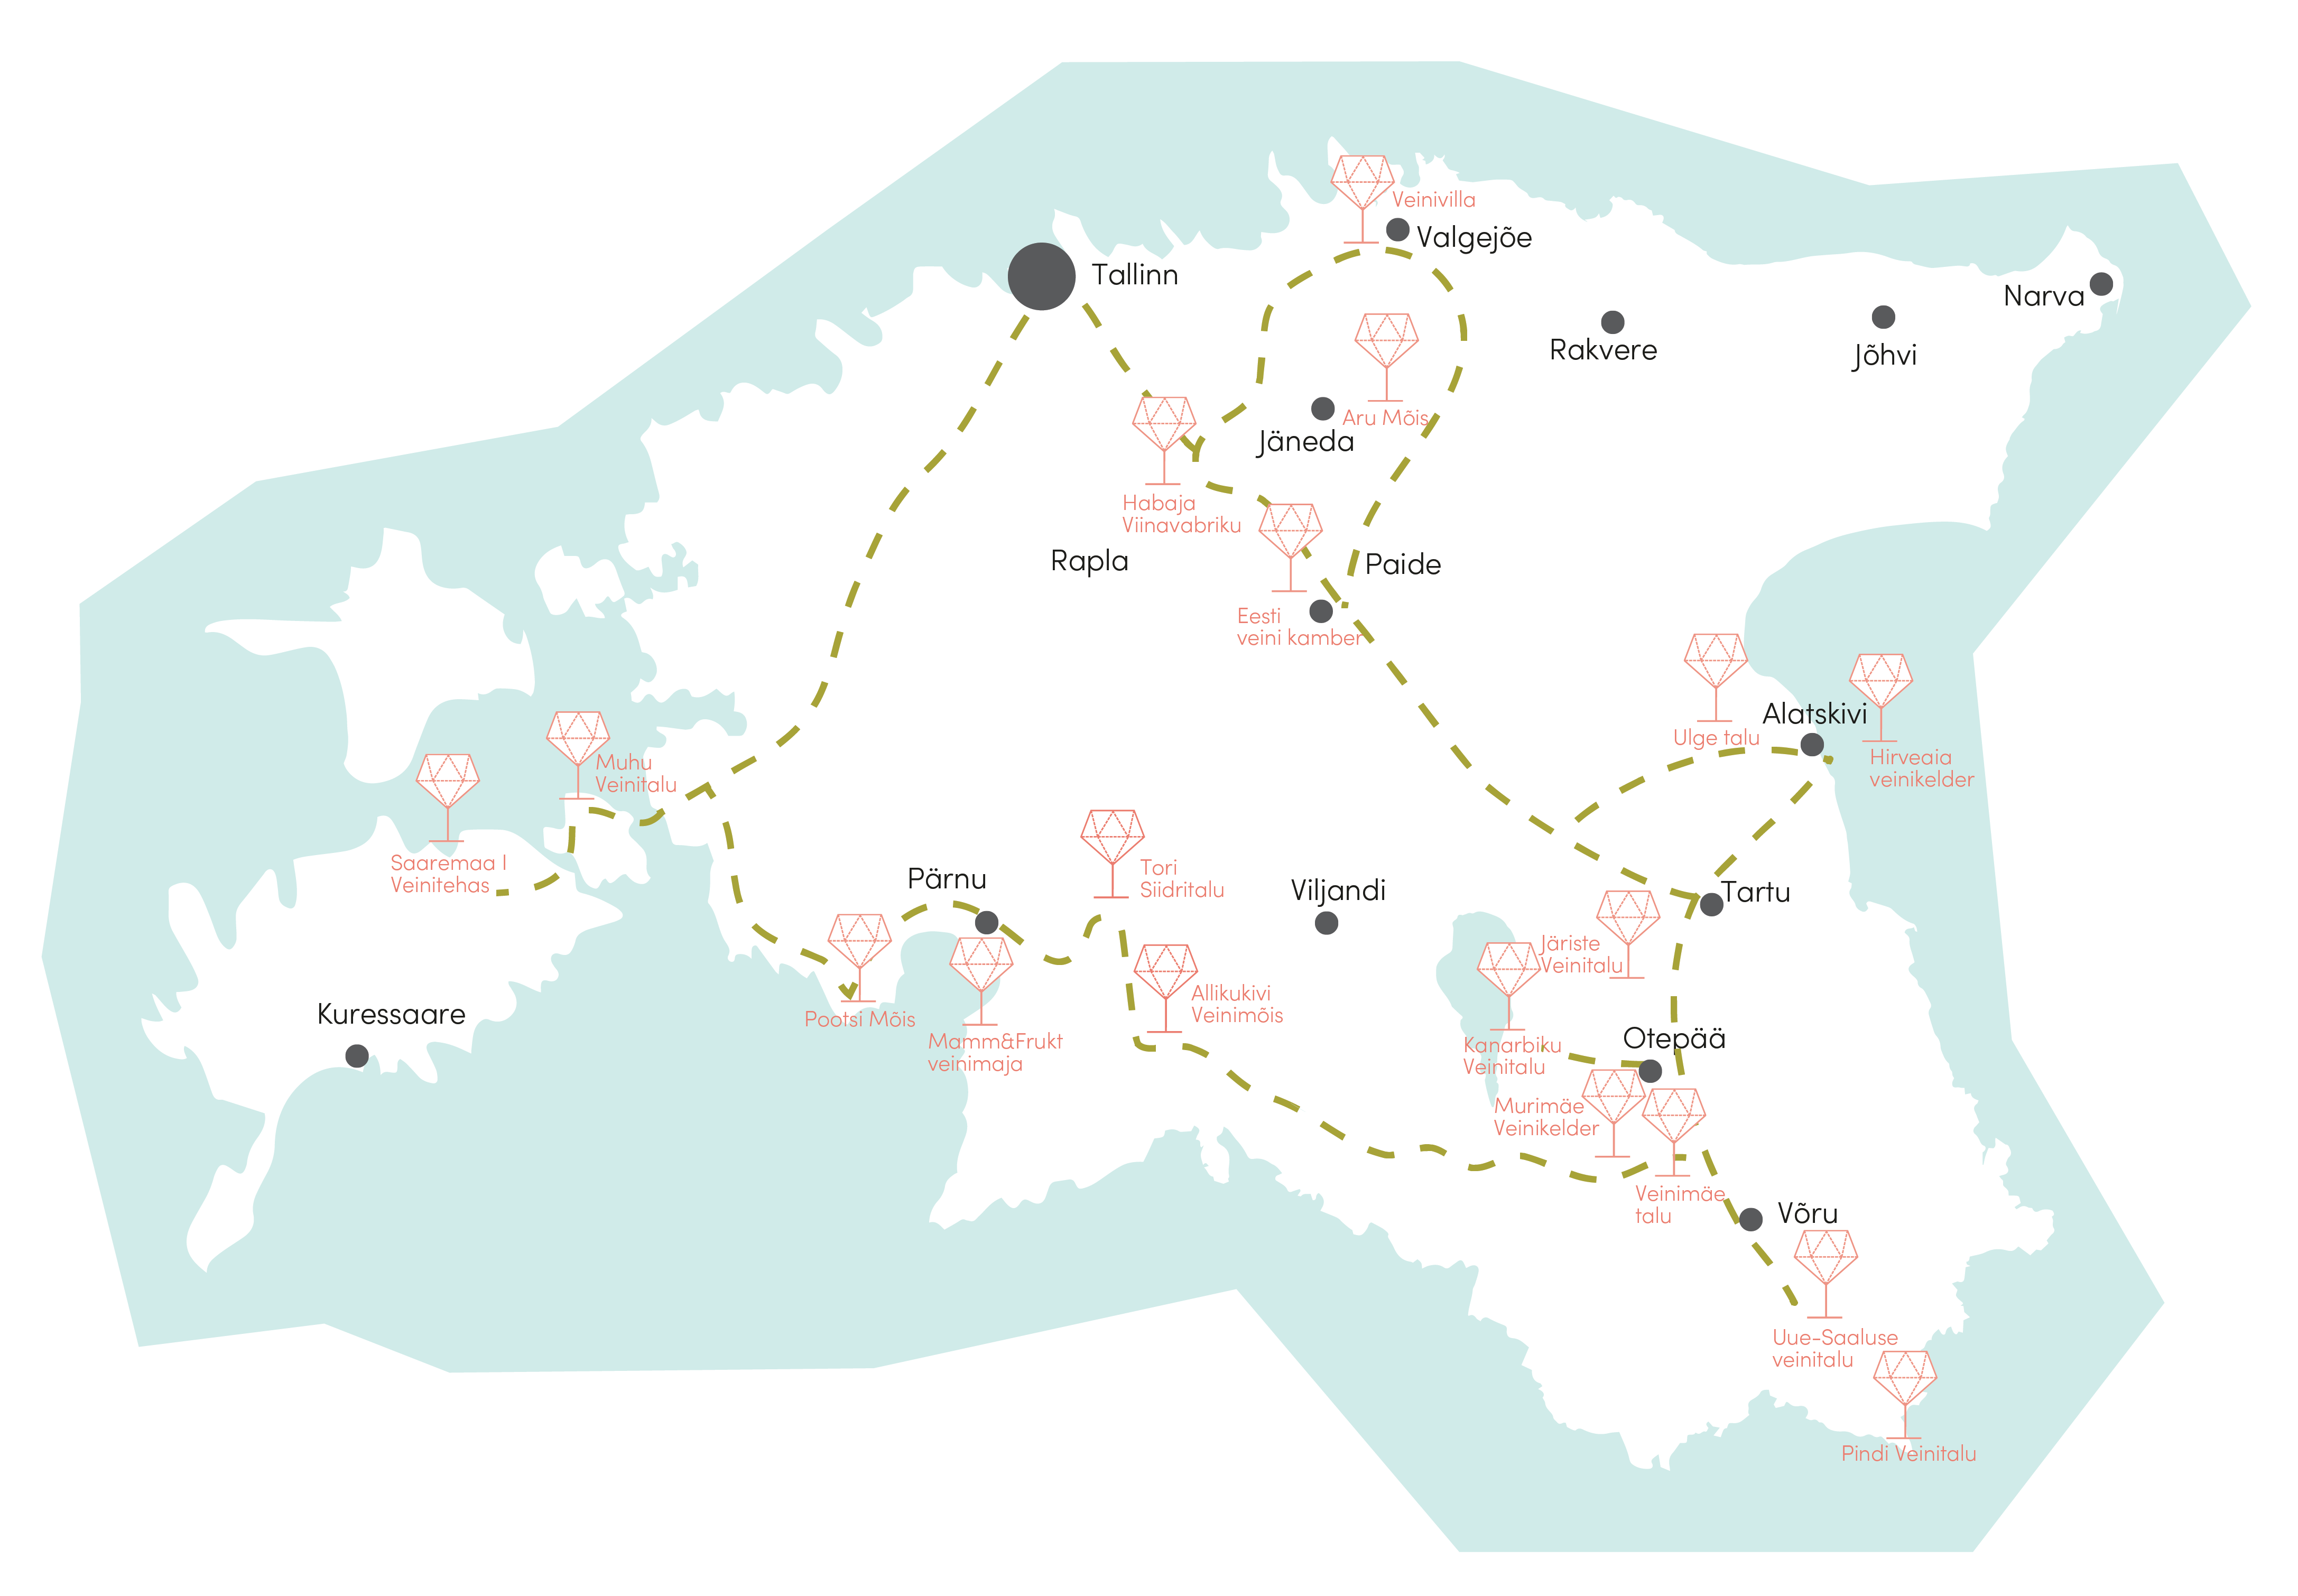 eesti-veinitee-estonian-winetrail-map-2021